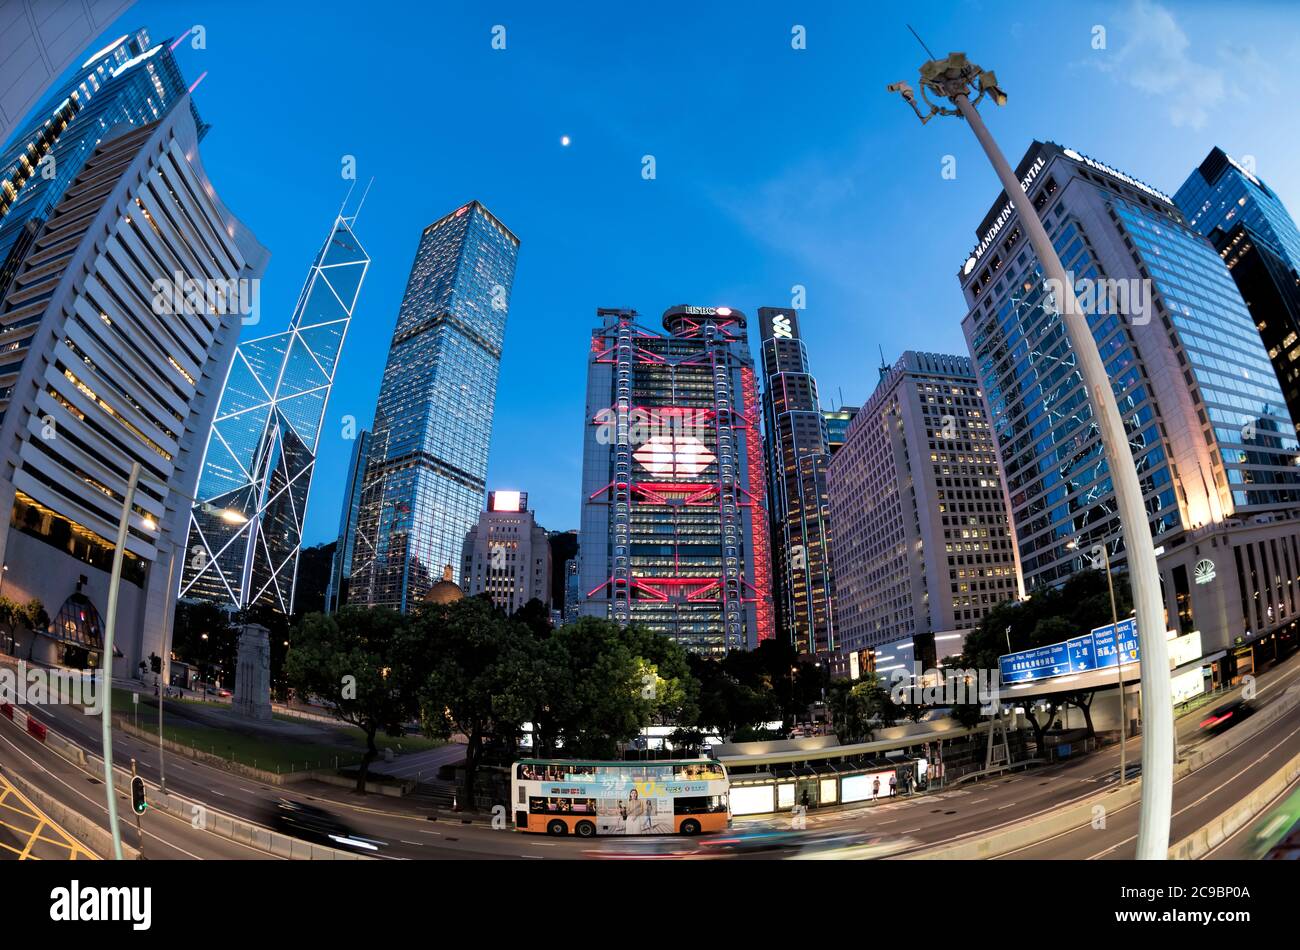 La Banque de Hong Kong et de Shanghai, HSBC, et la Banque de Chine, Standard Chartered Bank, Central Financial district, Hong Kong, Chine. Banque D'Images